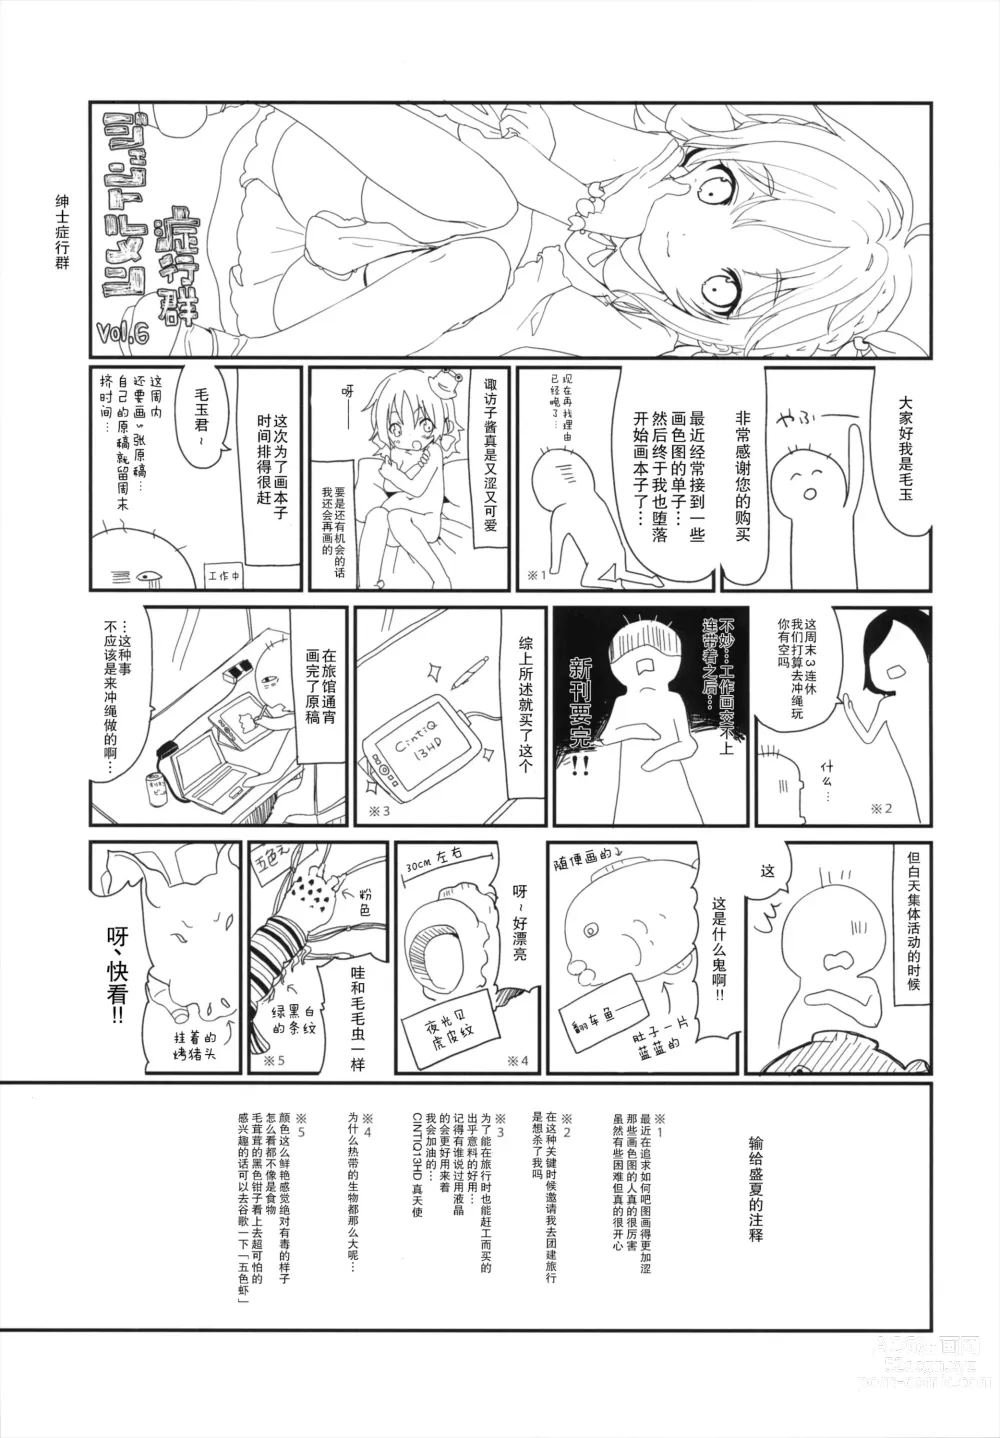 Page 23 of doujinshi Shinkou Material